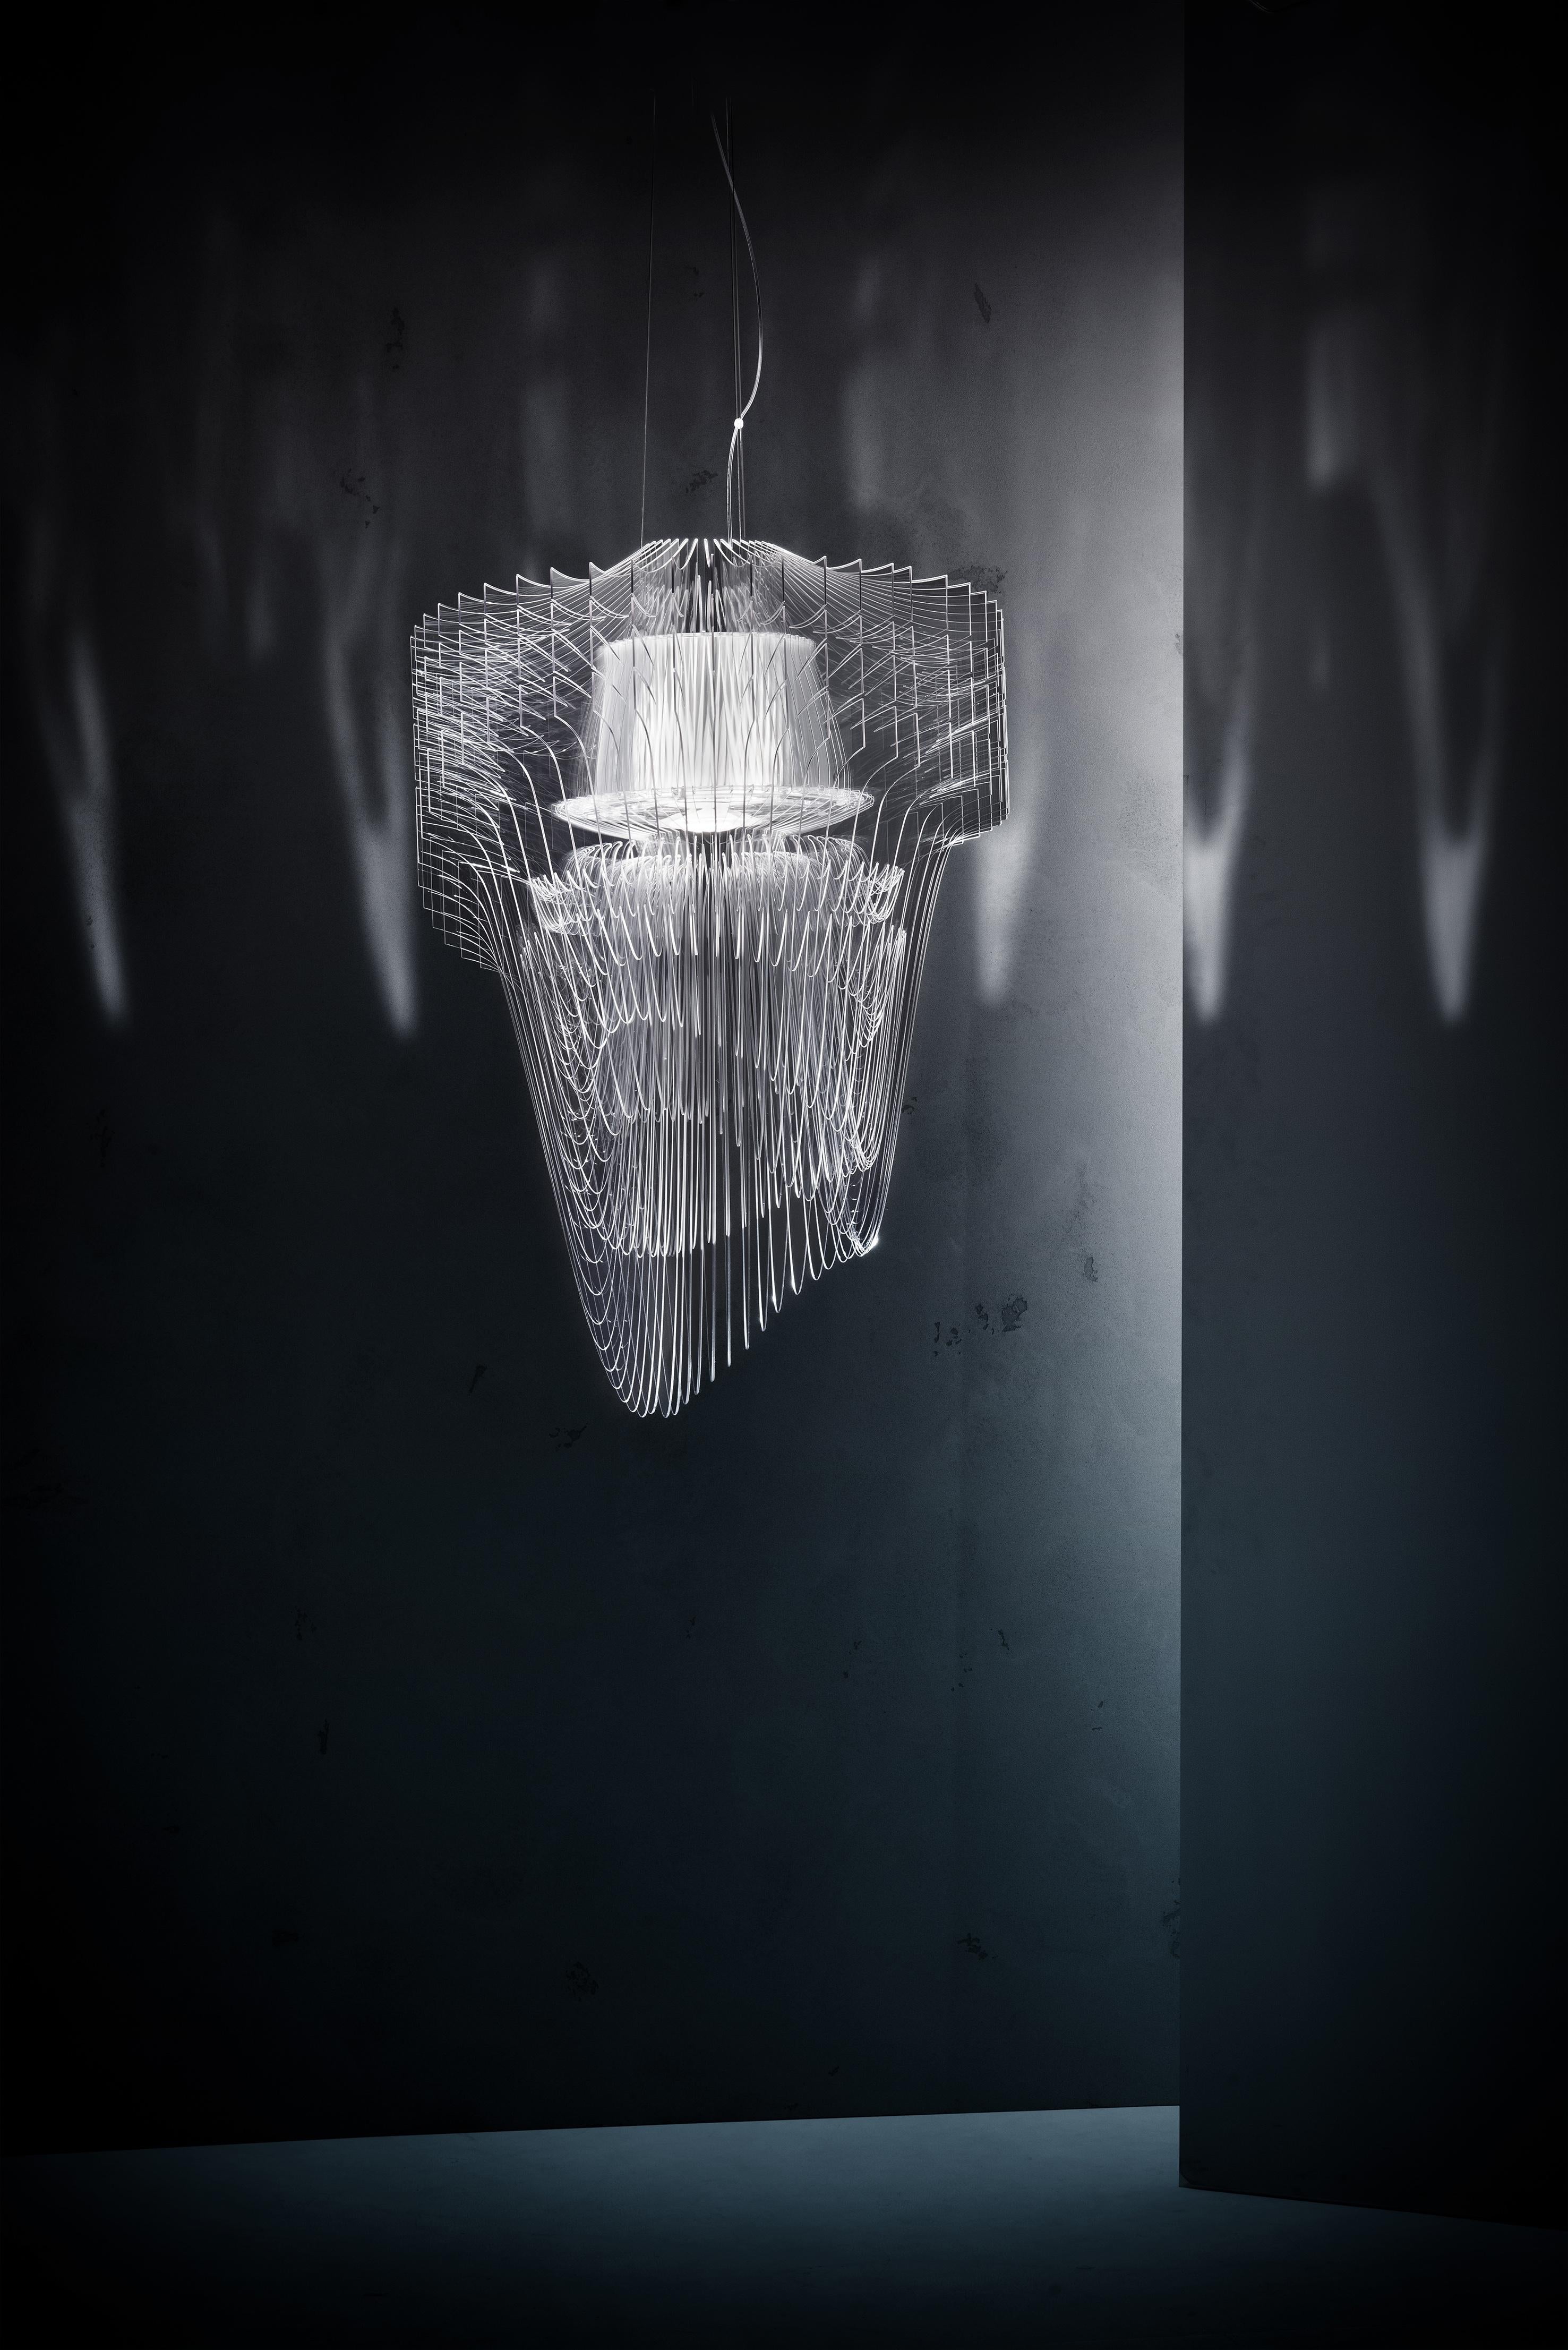 L'architecture lumineuse de Zaha Hadid est visionnaire, fluide et dynamique, infusant la sémantique révolutionnaire et iconique de la célèbre architecte dans les intérieurs domestiques et publics ; le résultat est l'harmonisation des êtres et de